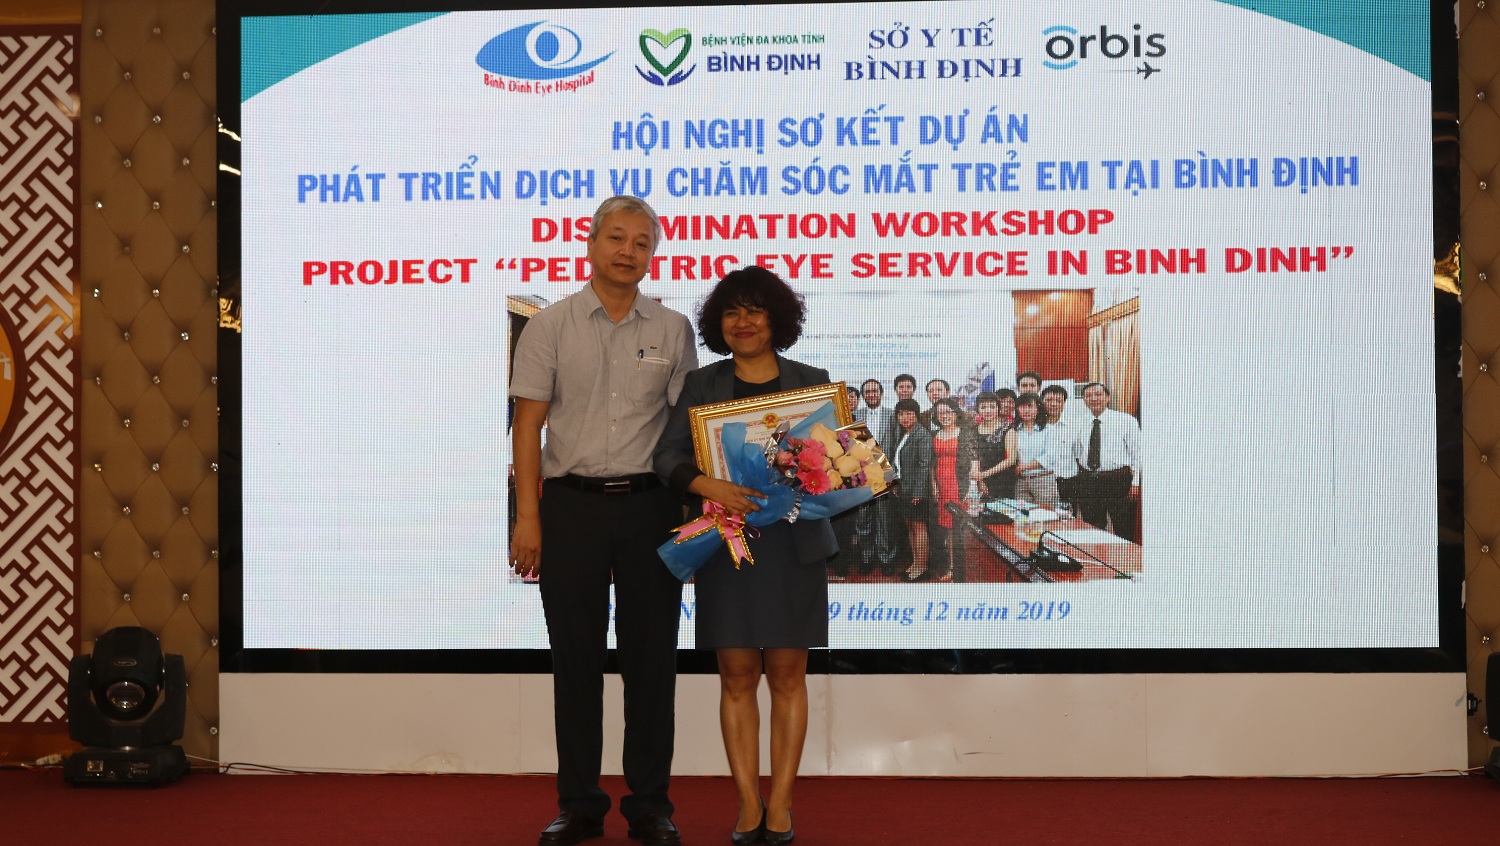 Giám đốc Sở Y tế Lê Quang Hùng trao Bằng khen UBND tỉnh cho Tổ chức Orbis Quốc tế tại Việt Nam và 03 cá nhân.